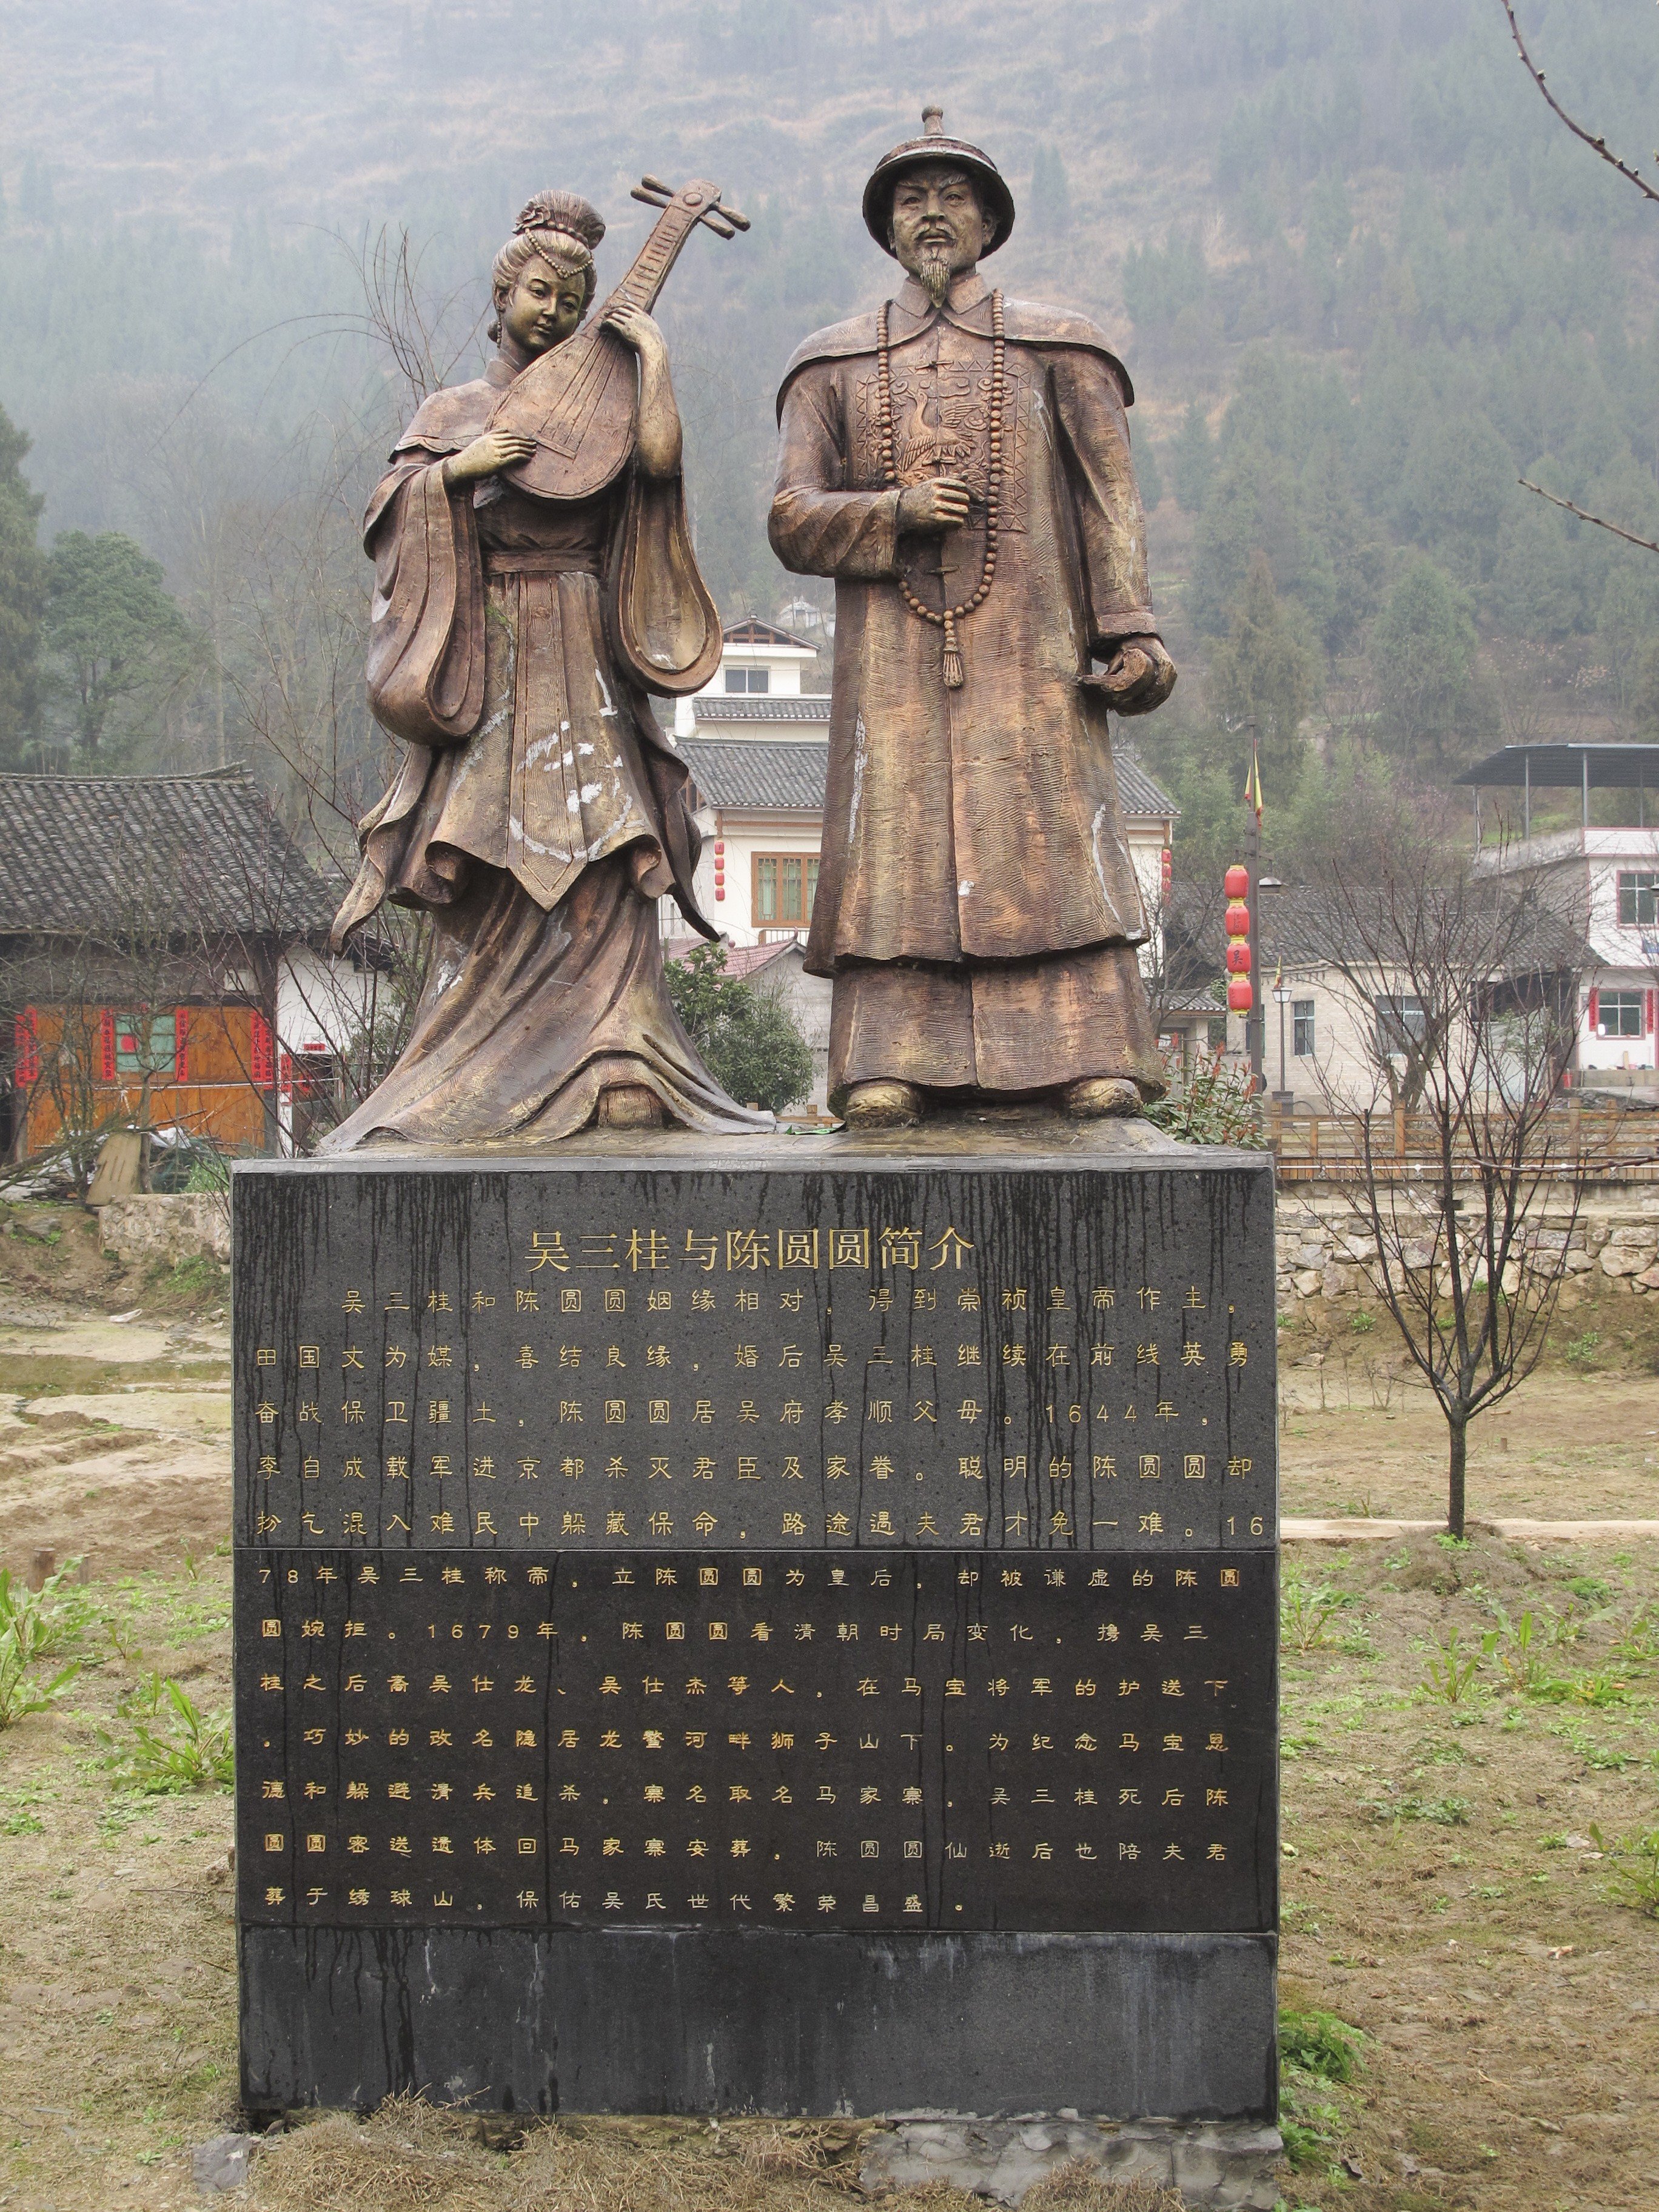 A statue of Chen Yuanyuan and Wu Sangui in Majia Zhai, Guizhou province. Photo: David Leffman